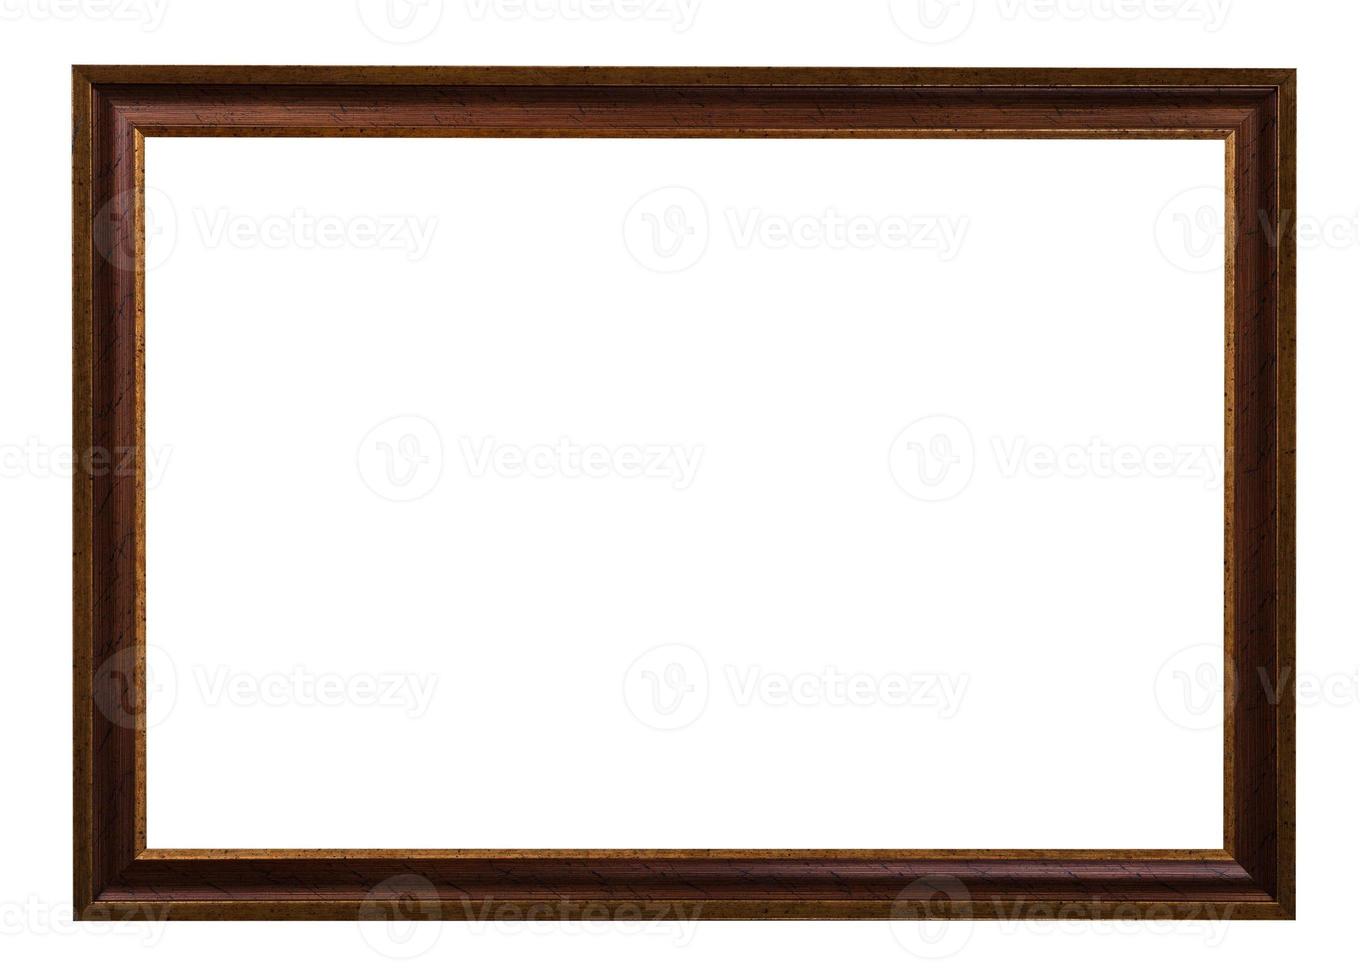 marco clásico de madera pintada de marrón oscuro foto